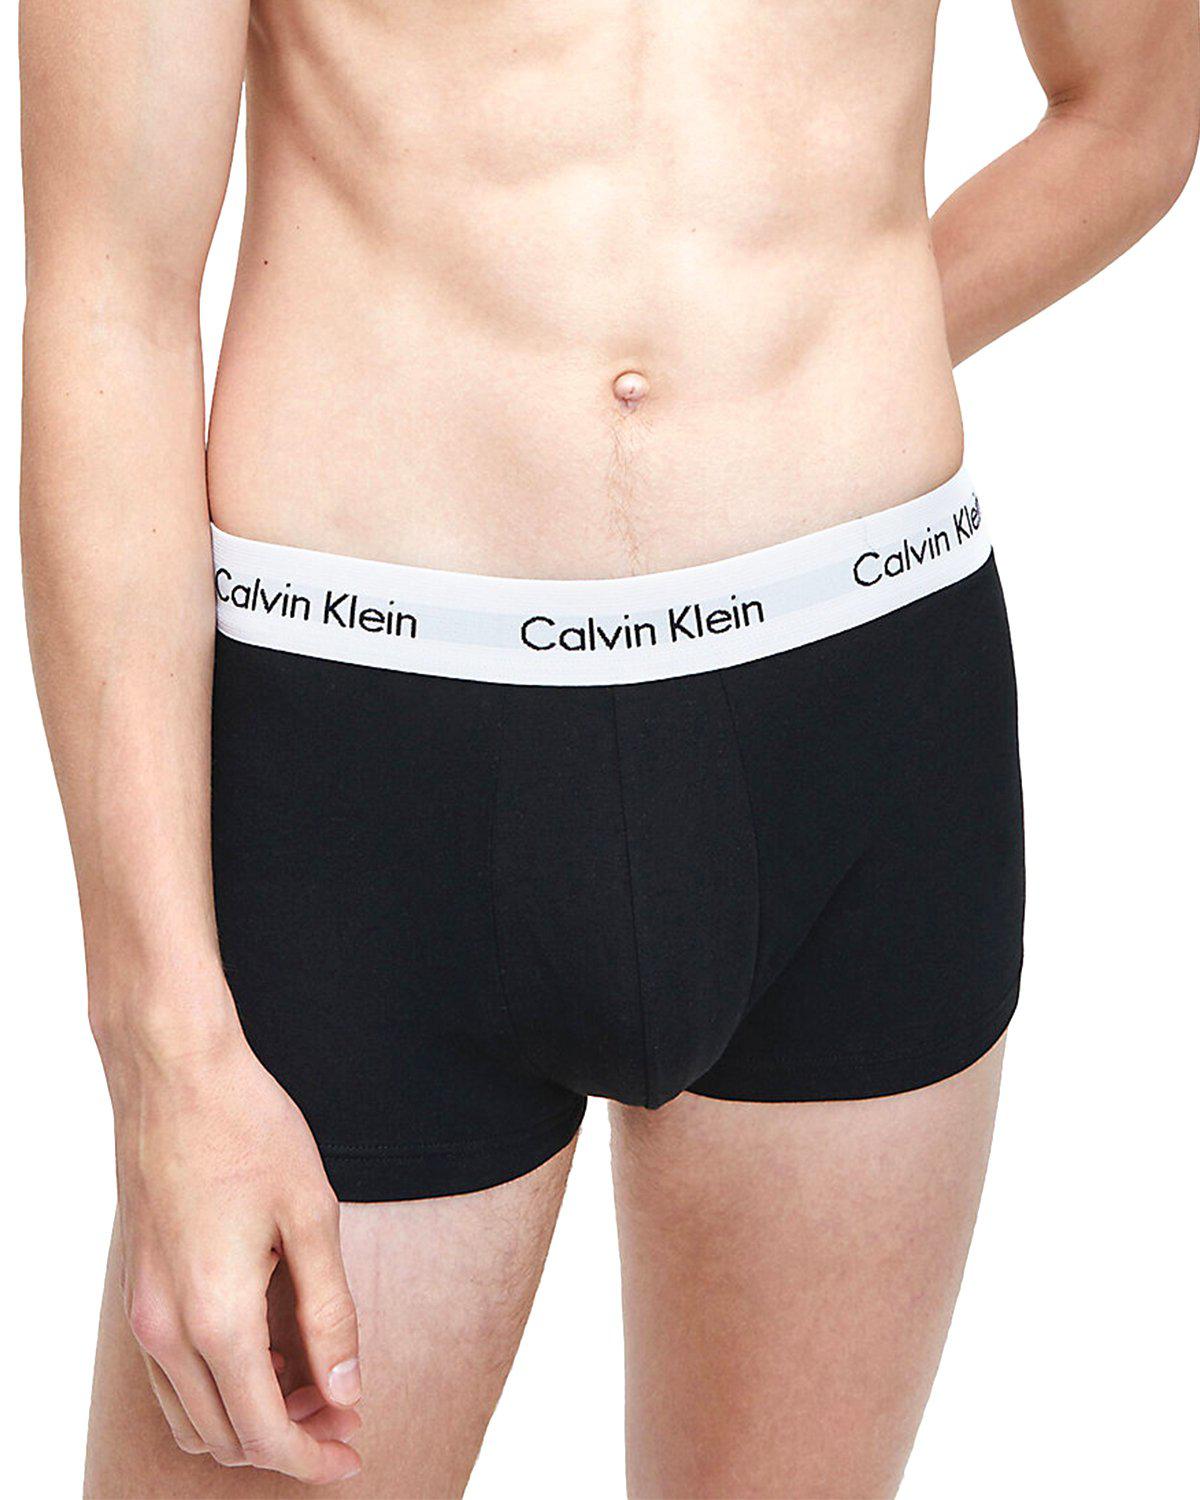 Buy Calvin Klein Underwear Men Trunks Online at desertcartIreland